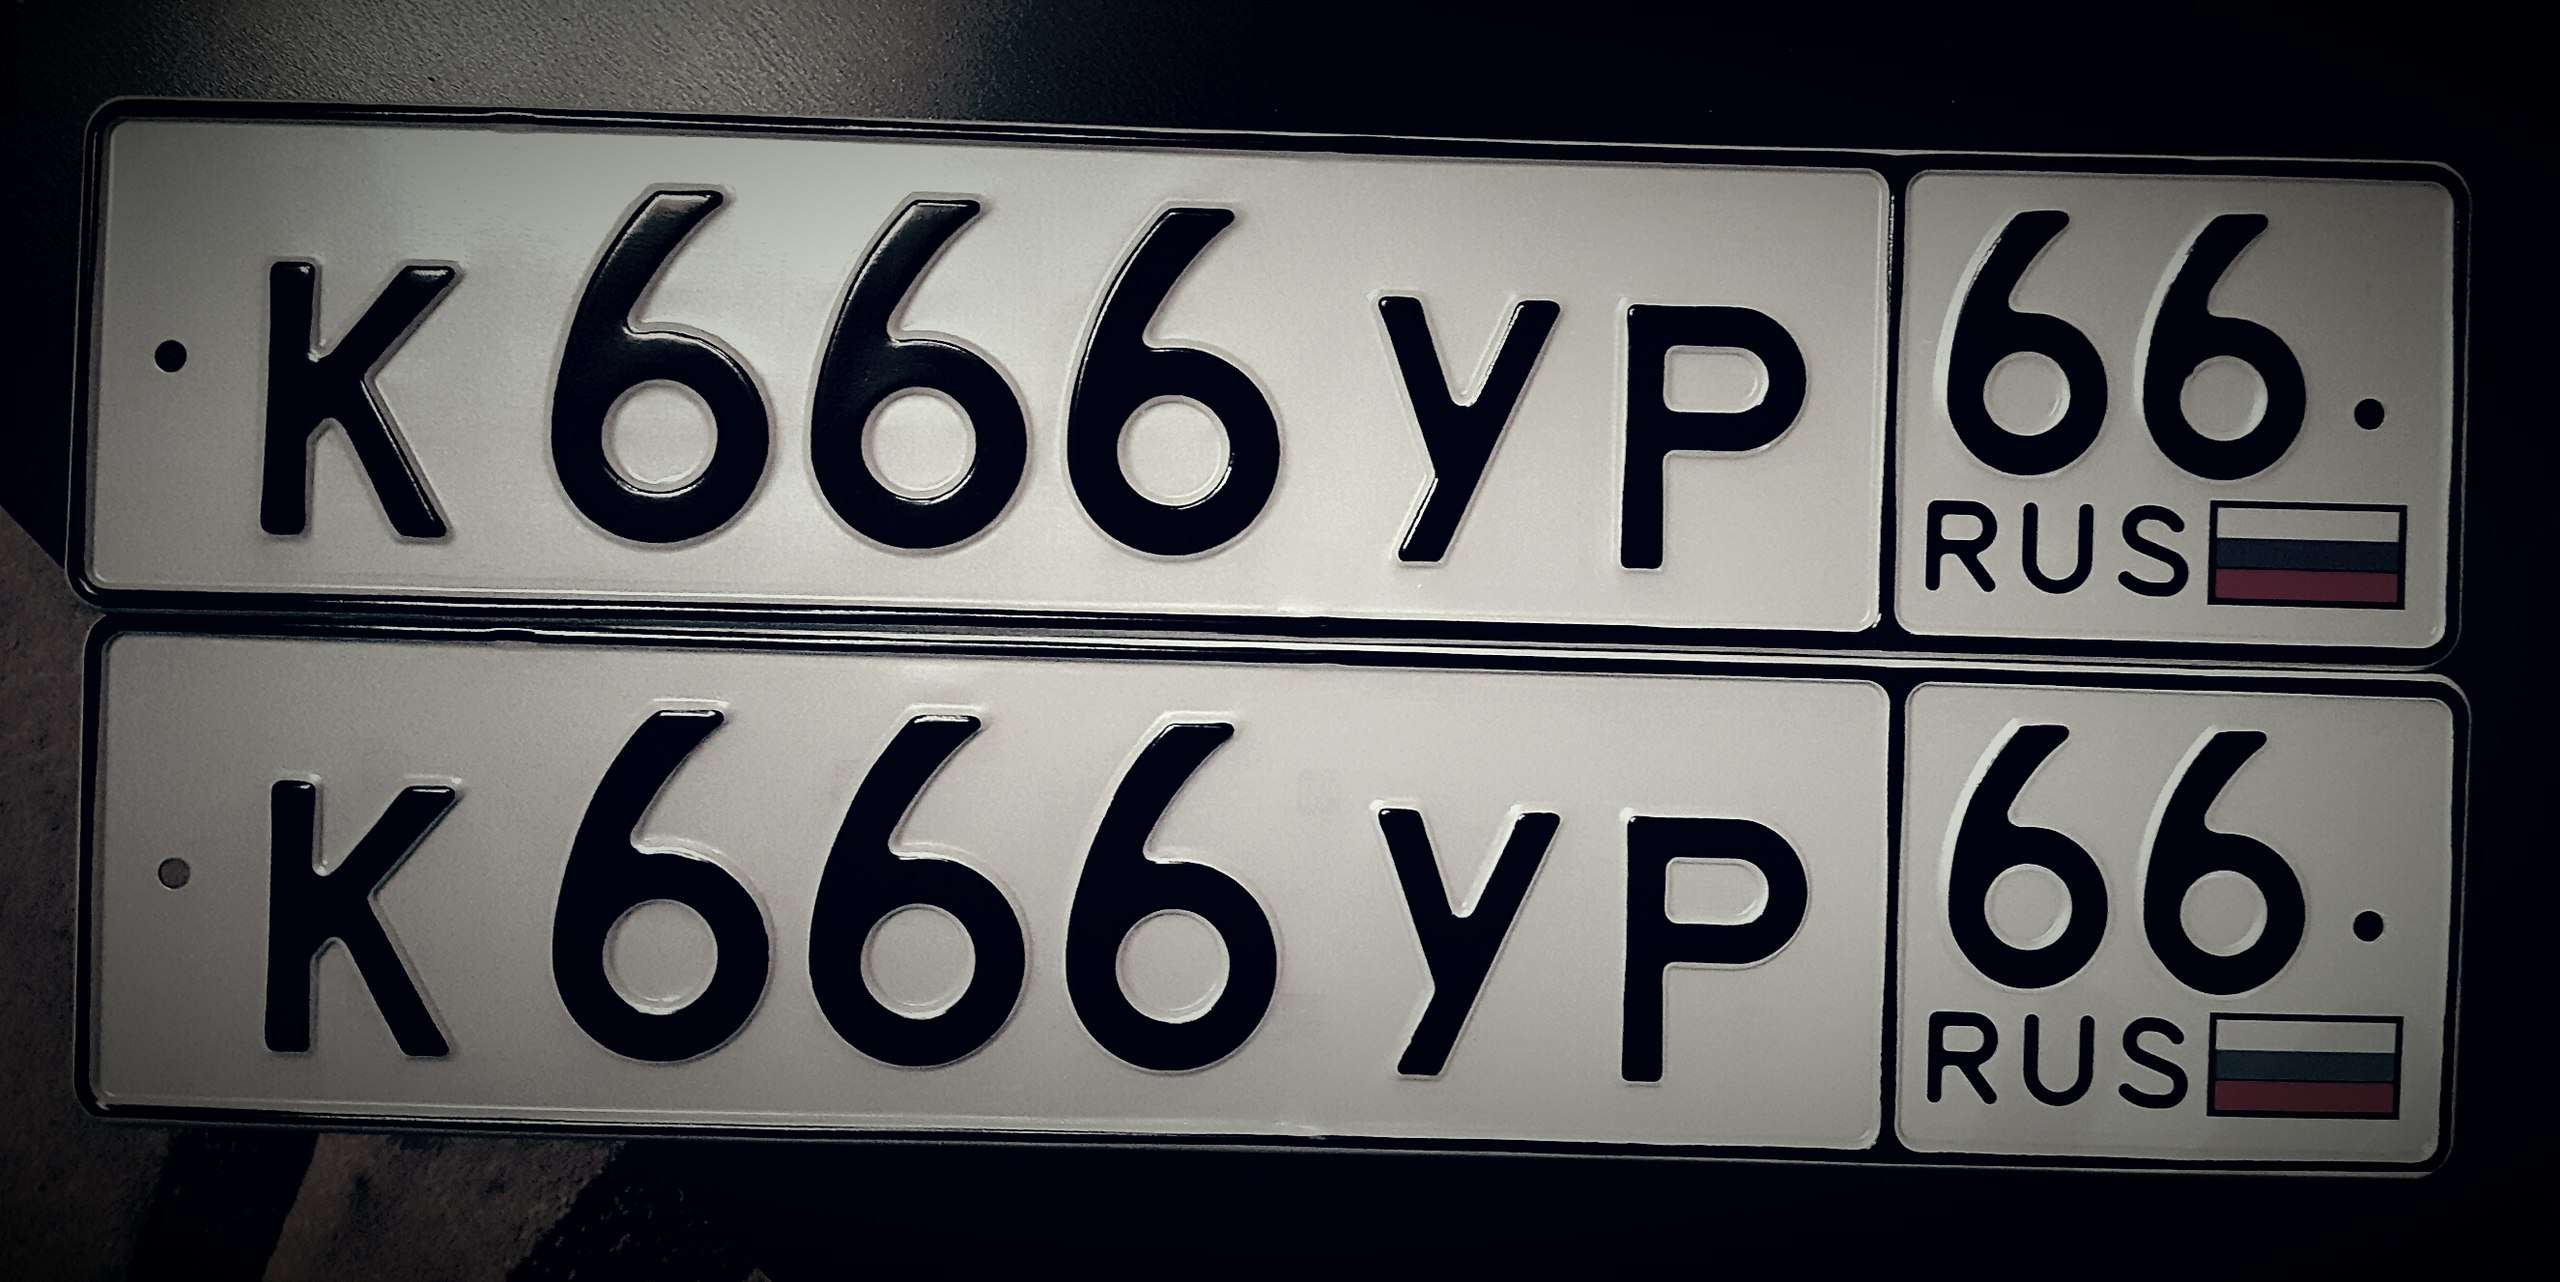 Как можно открыть номеров. Номера машин. Государственный номерной знак. Автомобильный номерной знак. Номерной знак 666.